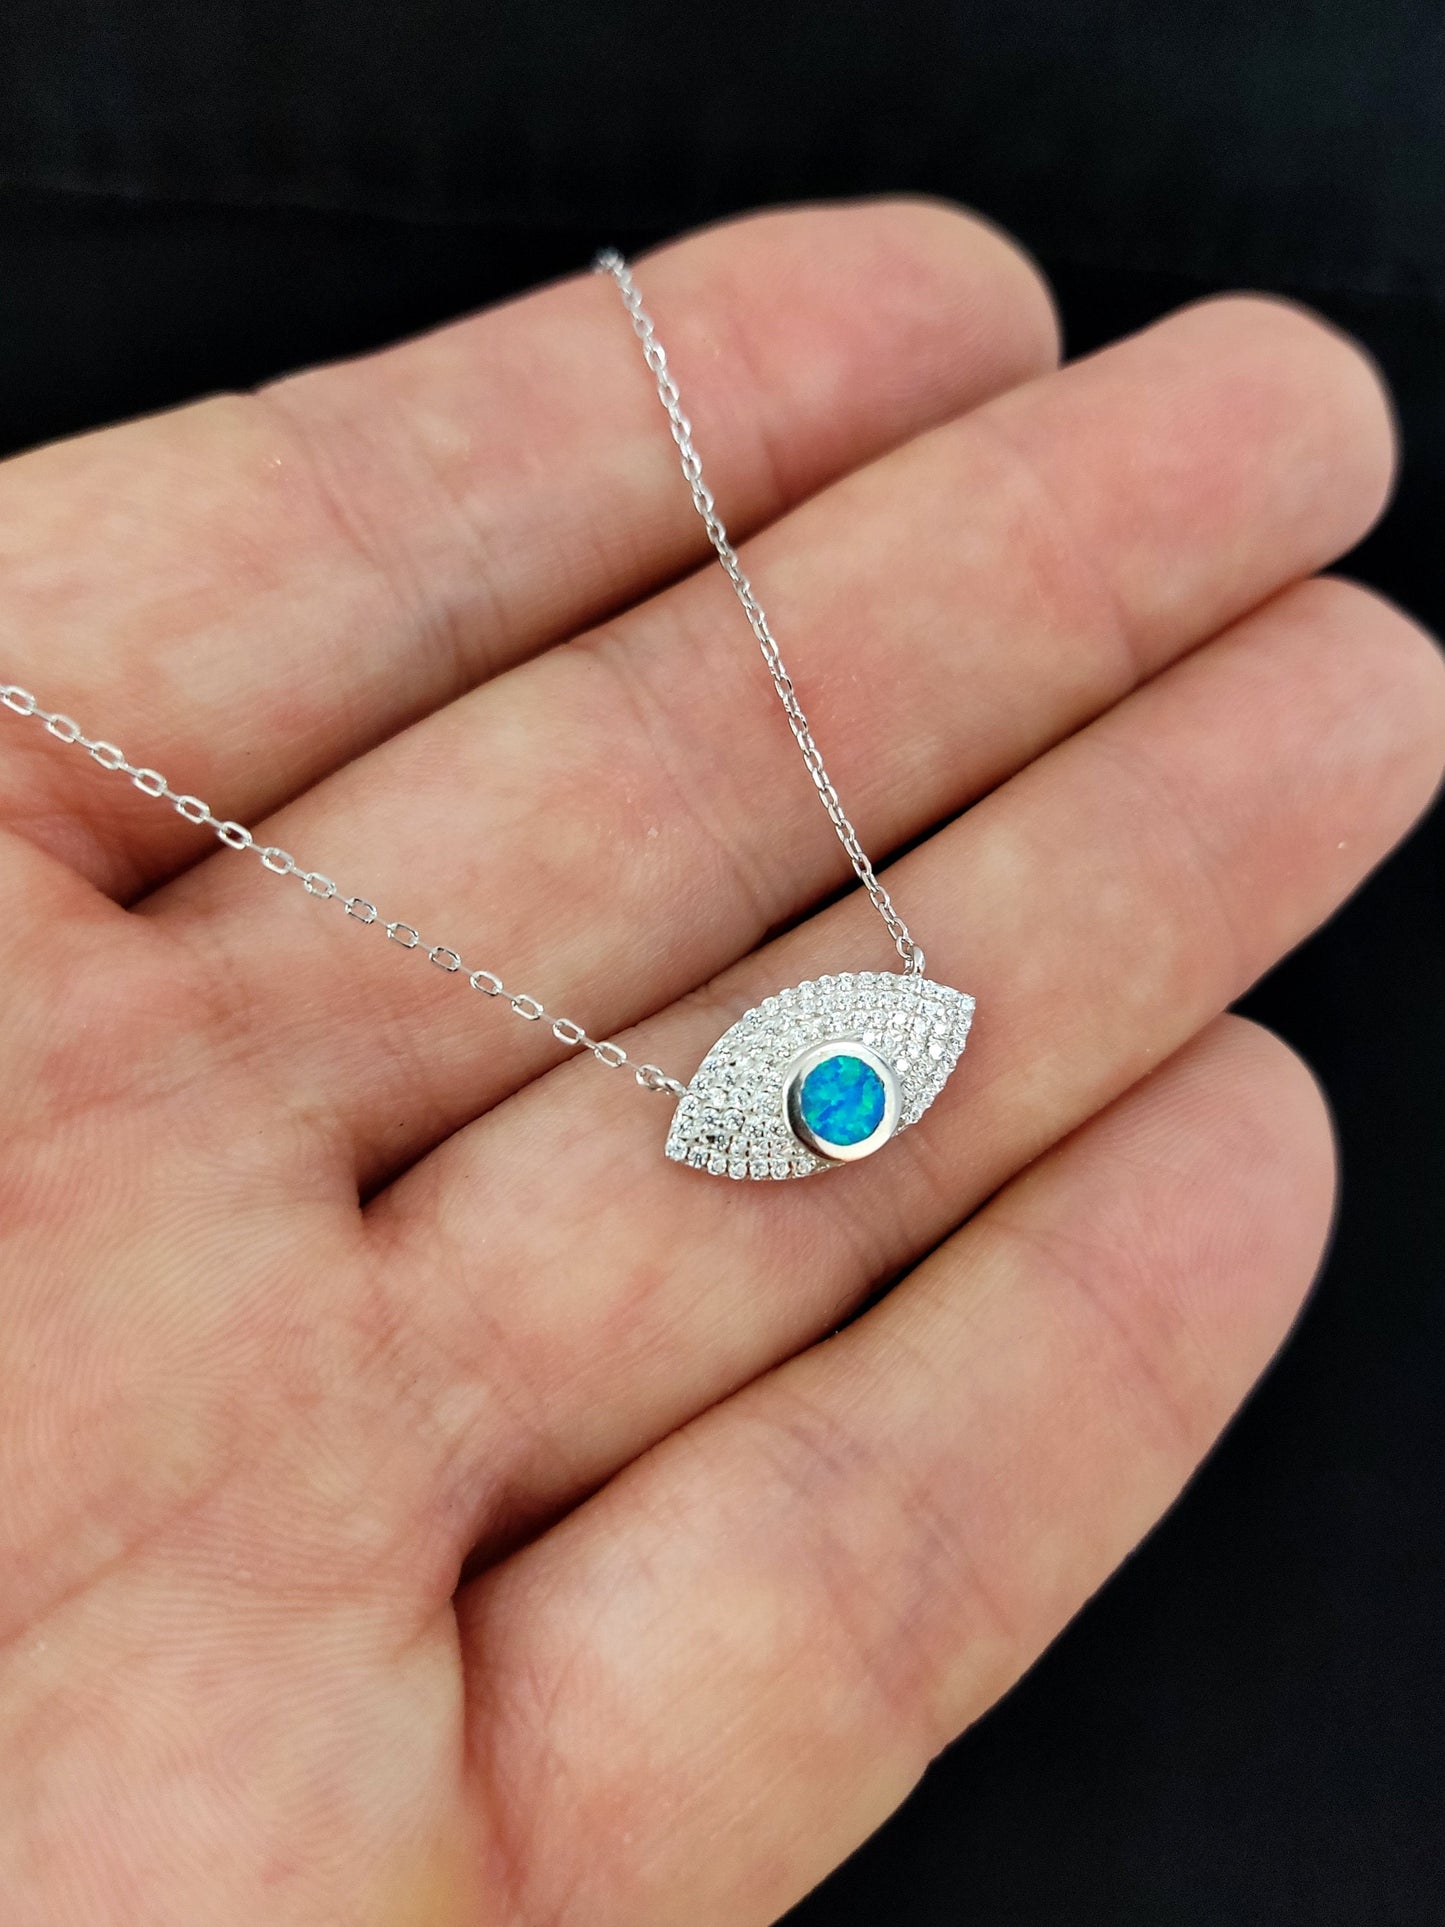 Sterling Silver 925 Fire Rainbow Blue Opal & Crystal Evil Eye Chain Pendant Necklace, Griechischer Opal Kette, Bijoux Grecque, Greek Jewelry